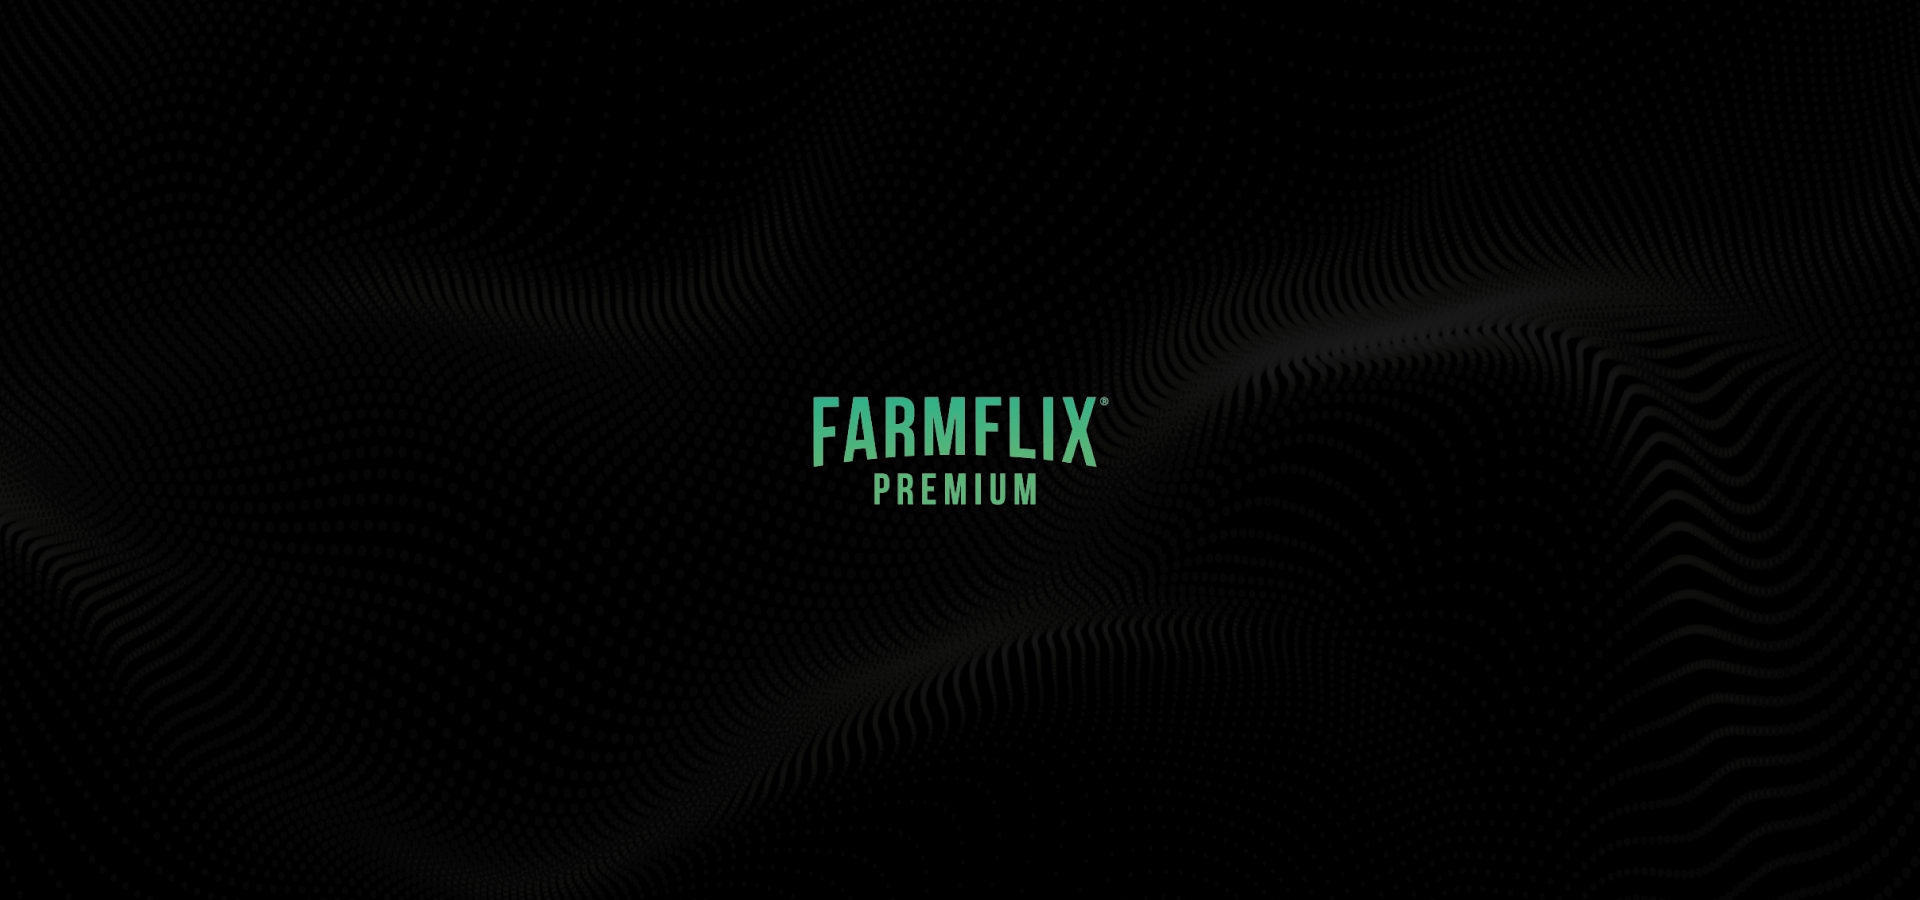 FarmFlix Premium